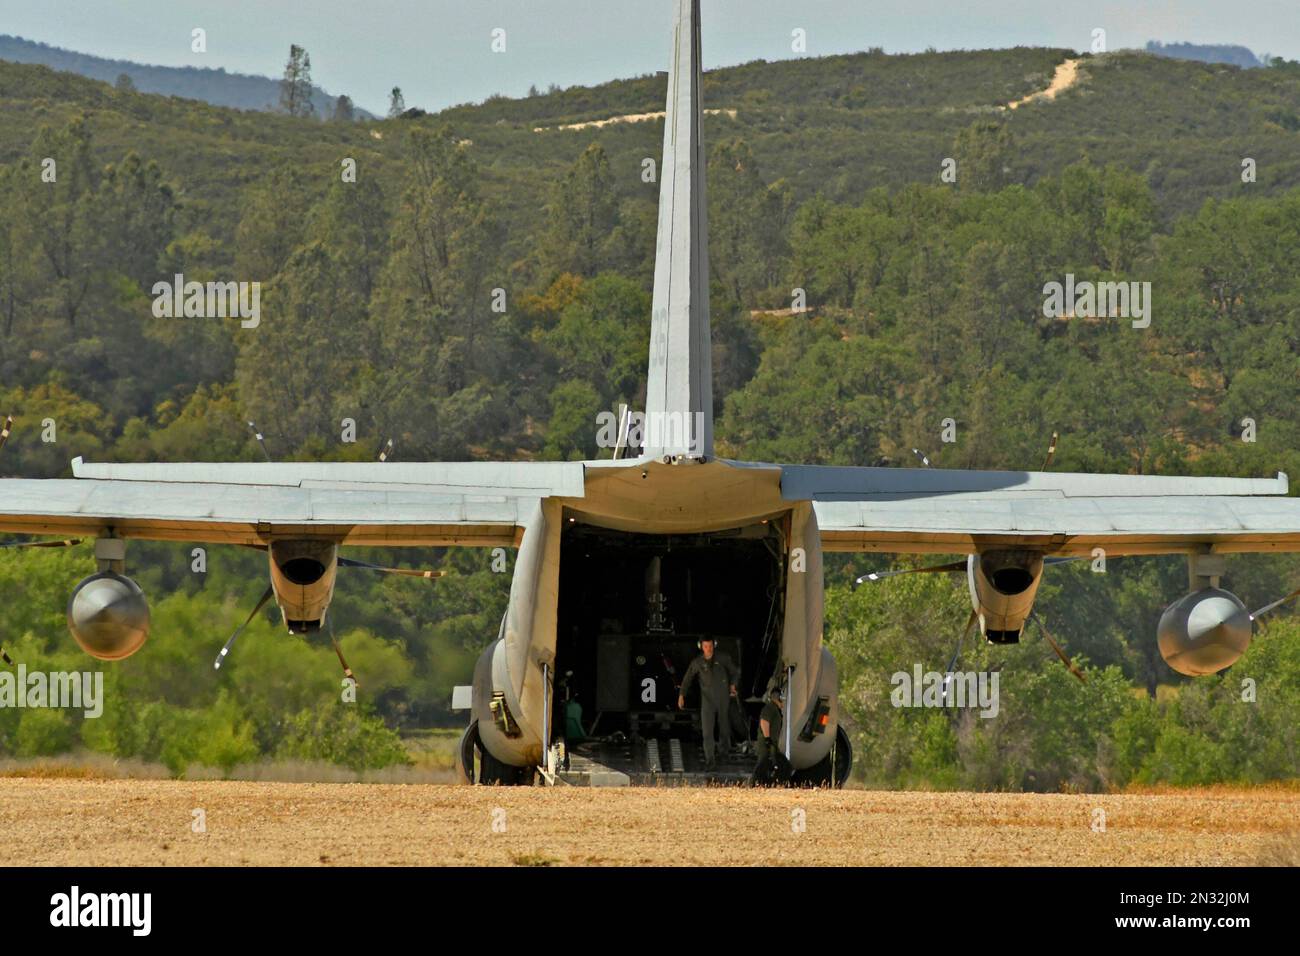 C-130 compartiment de chargement ouvert Hercules avec 13th membres de l'unité expéditionnaire maritime sur piste d'atterrissage en terre pendant un exercice militaire, fort Hunter Liggett, CA. Banque D'Images